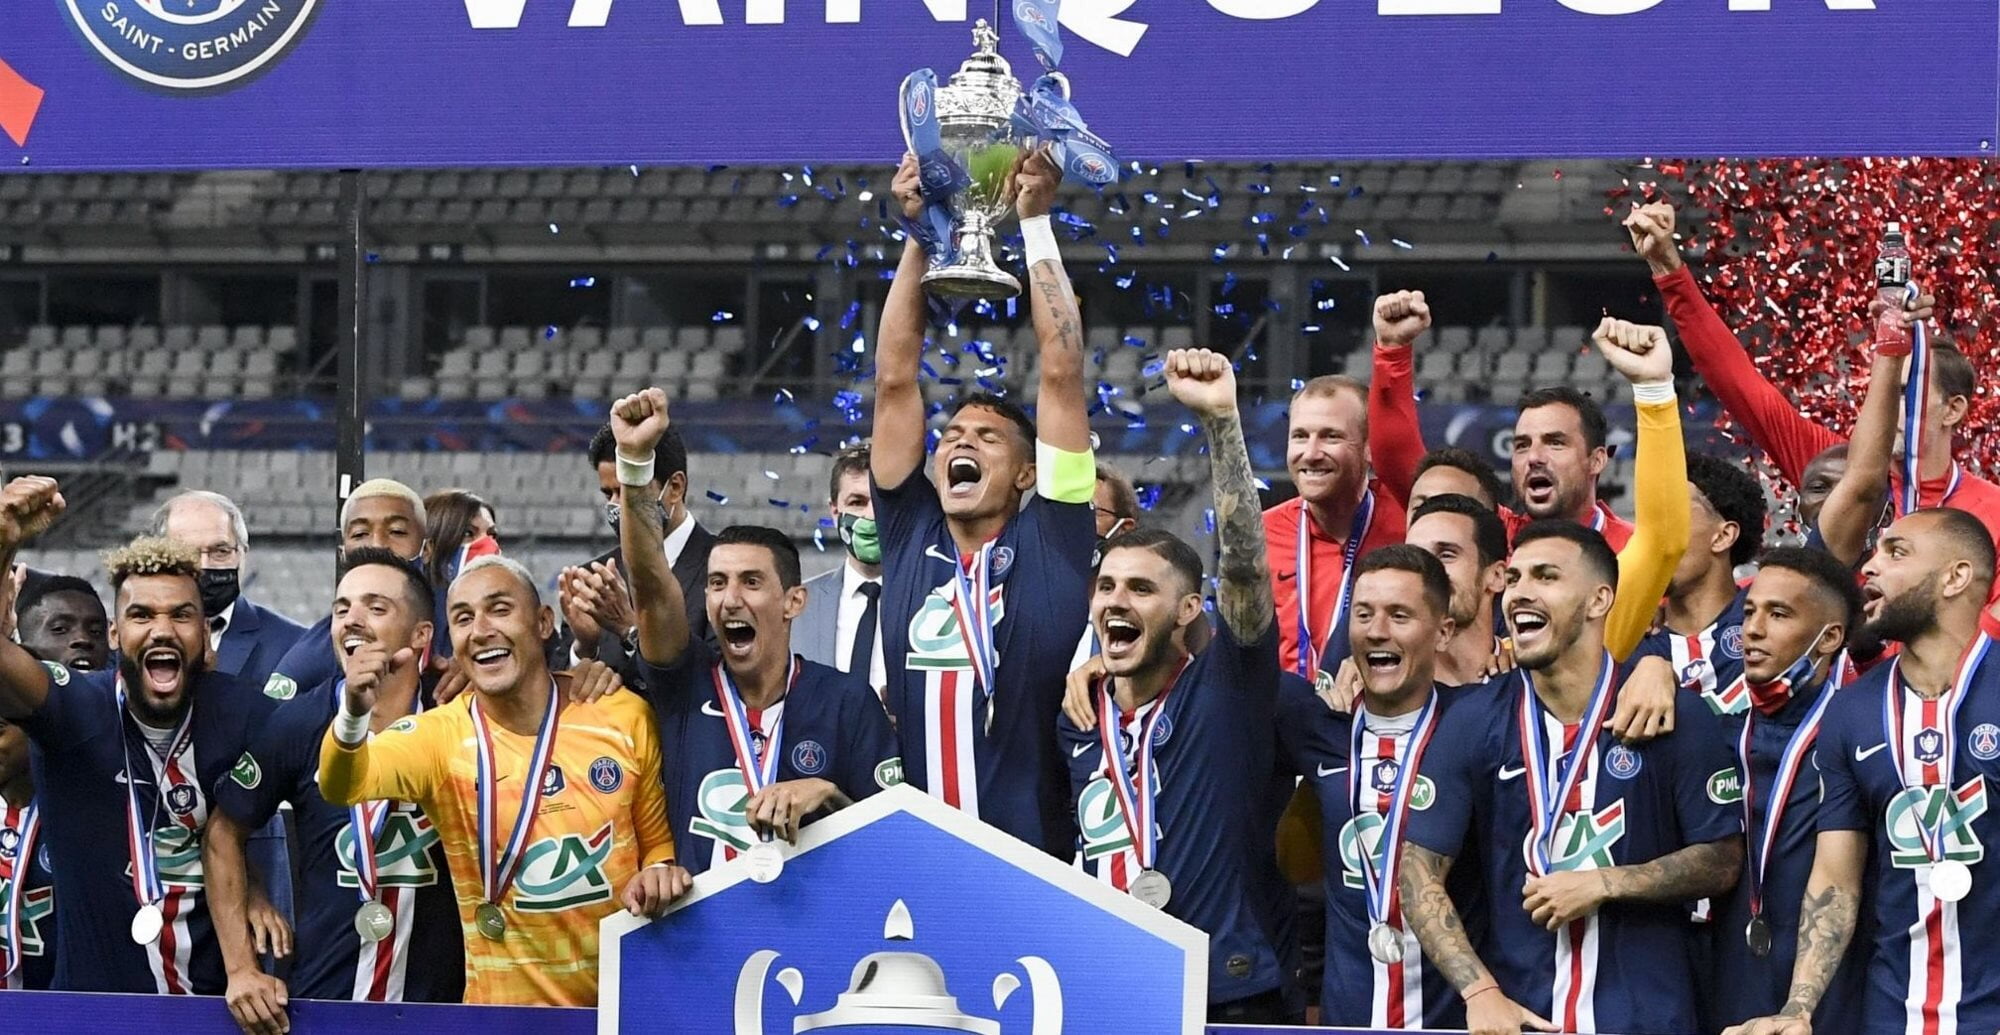 PSG Paris Coupe de France winners Saint-Etienne 